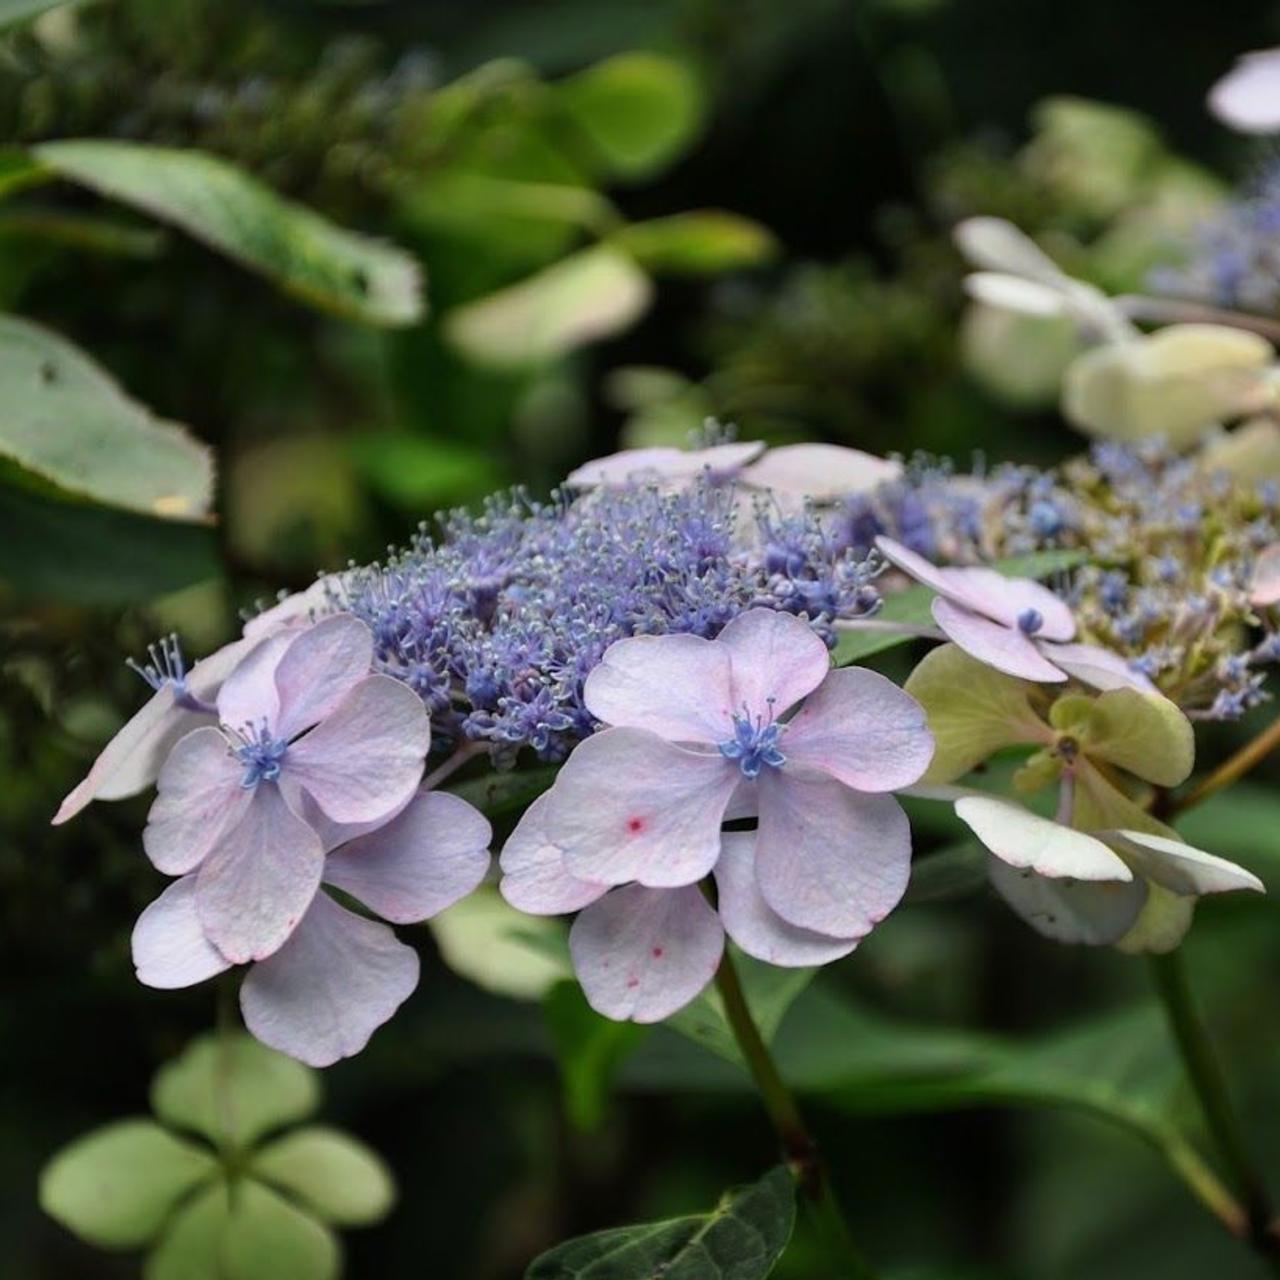 hydrangea serrata 'bluebird' - kaufen sie pflanzen bei coolplants